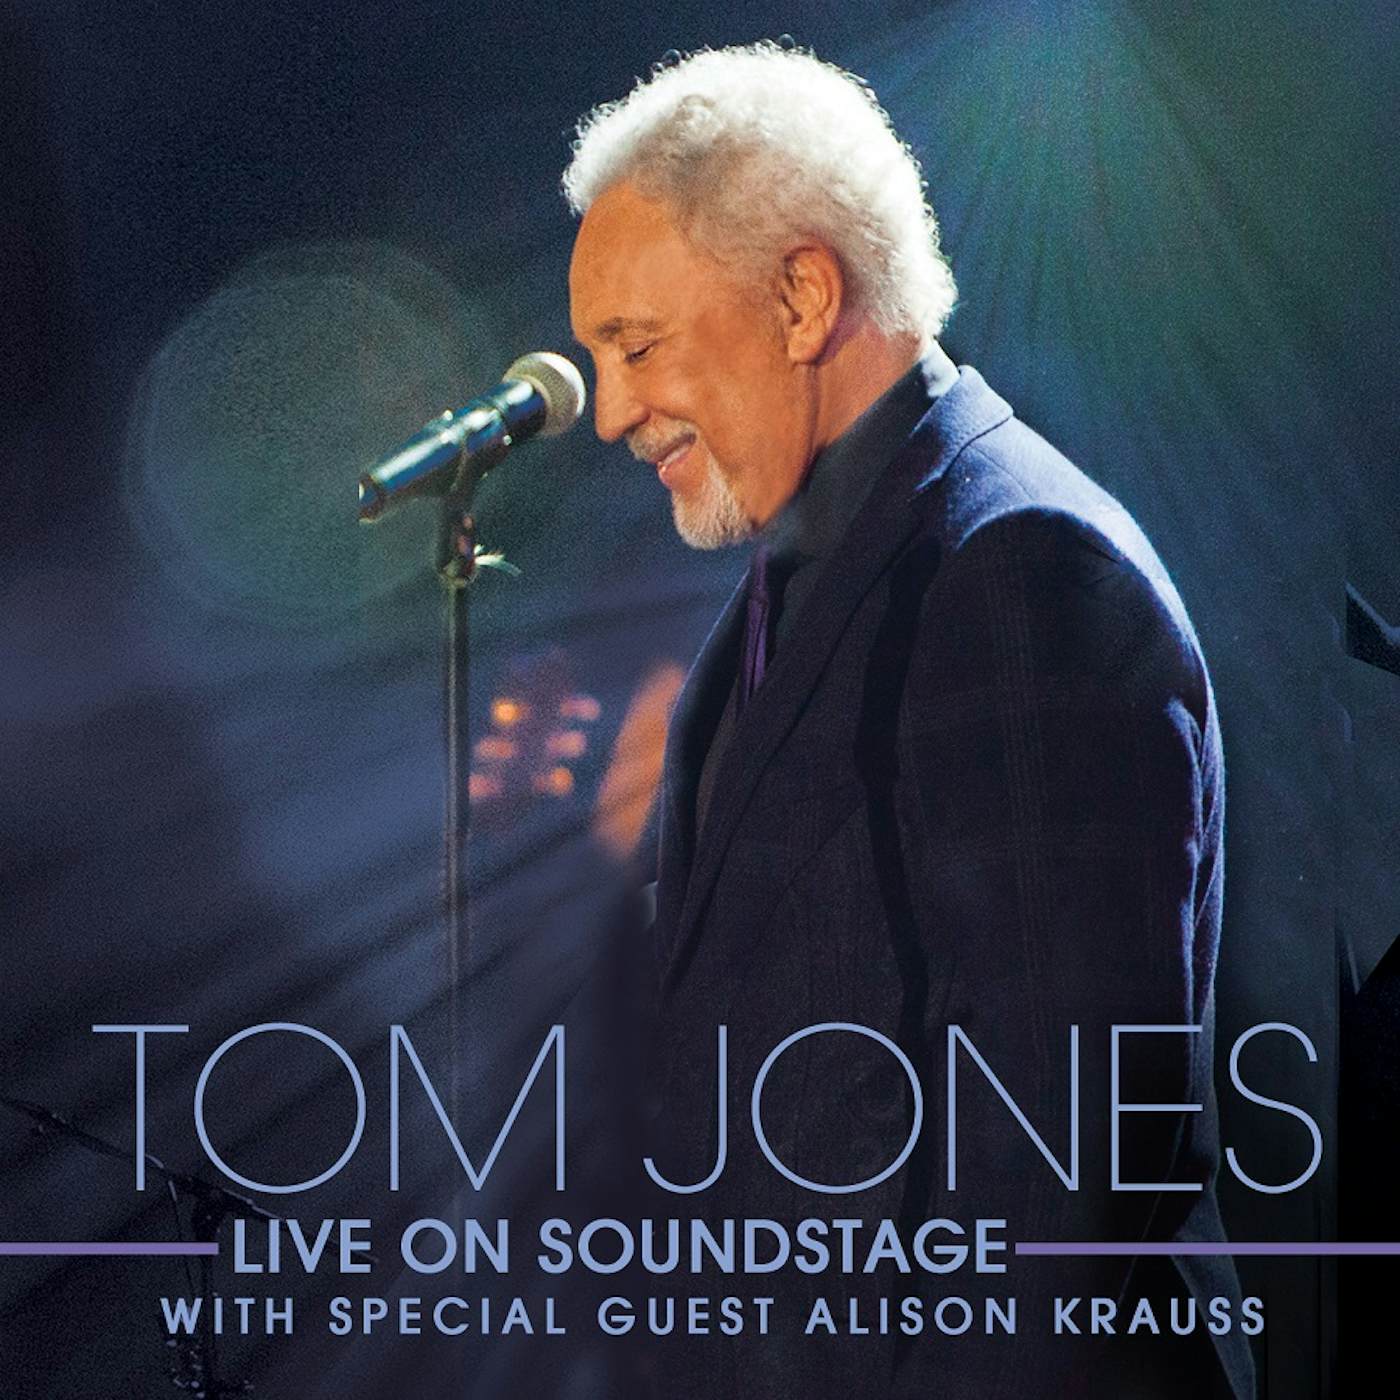 Tom Jones LIVE ON SOUNDSTAGE Blu-ray